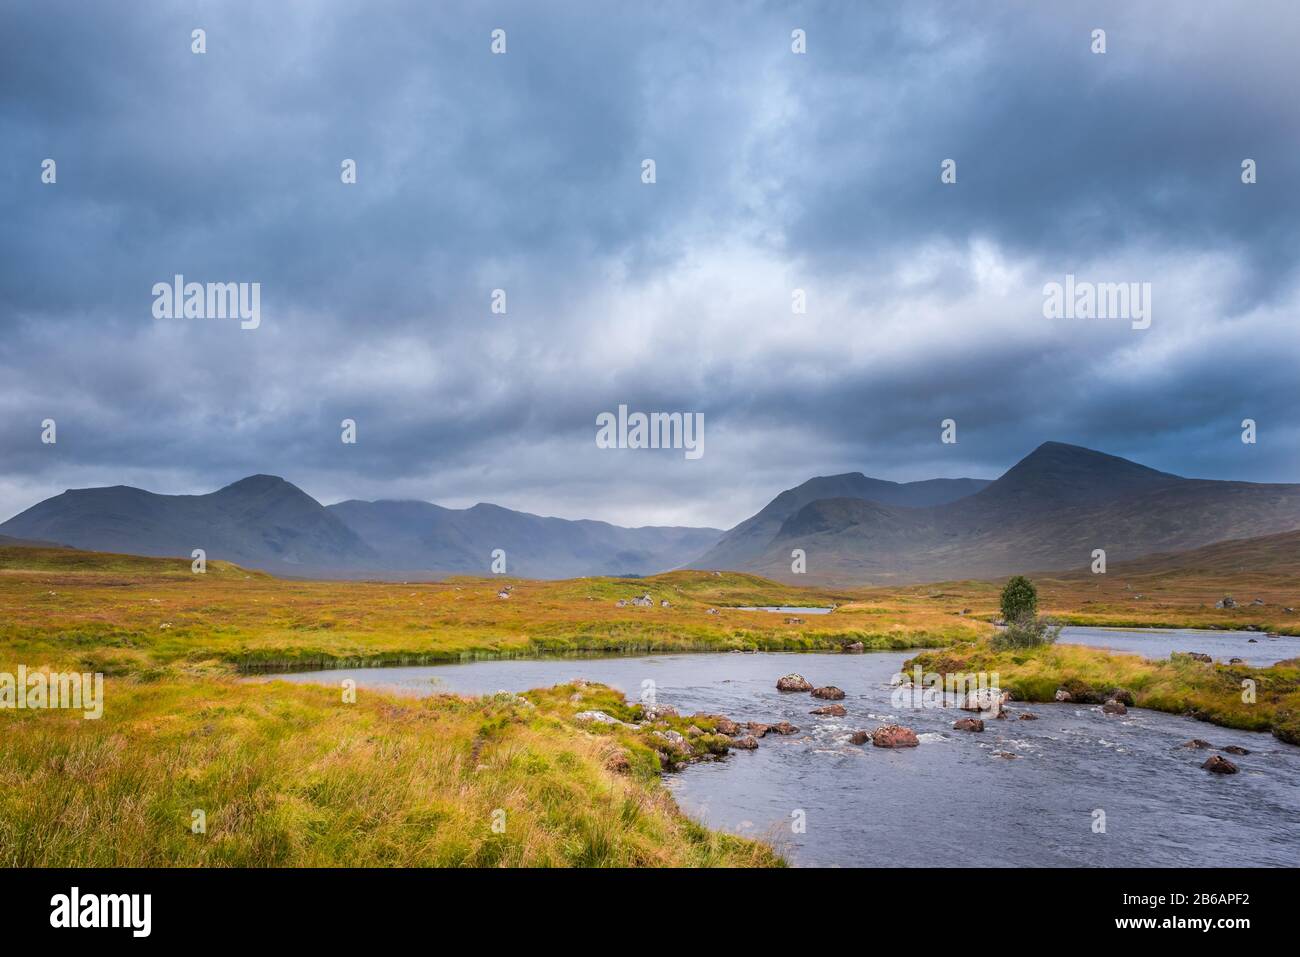 Collines sous un ciel orageux avec un ruisseau sinueux au premier plan. Scottish Highlands, Royaume-Uni Banque D'Images